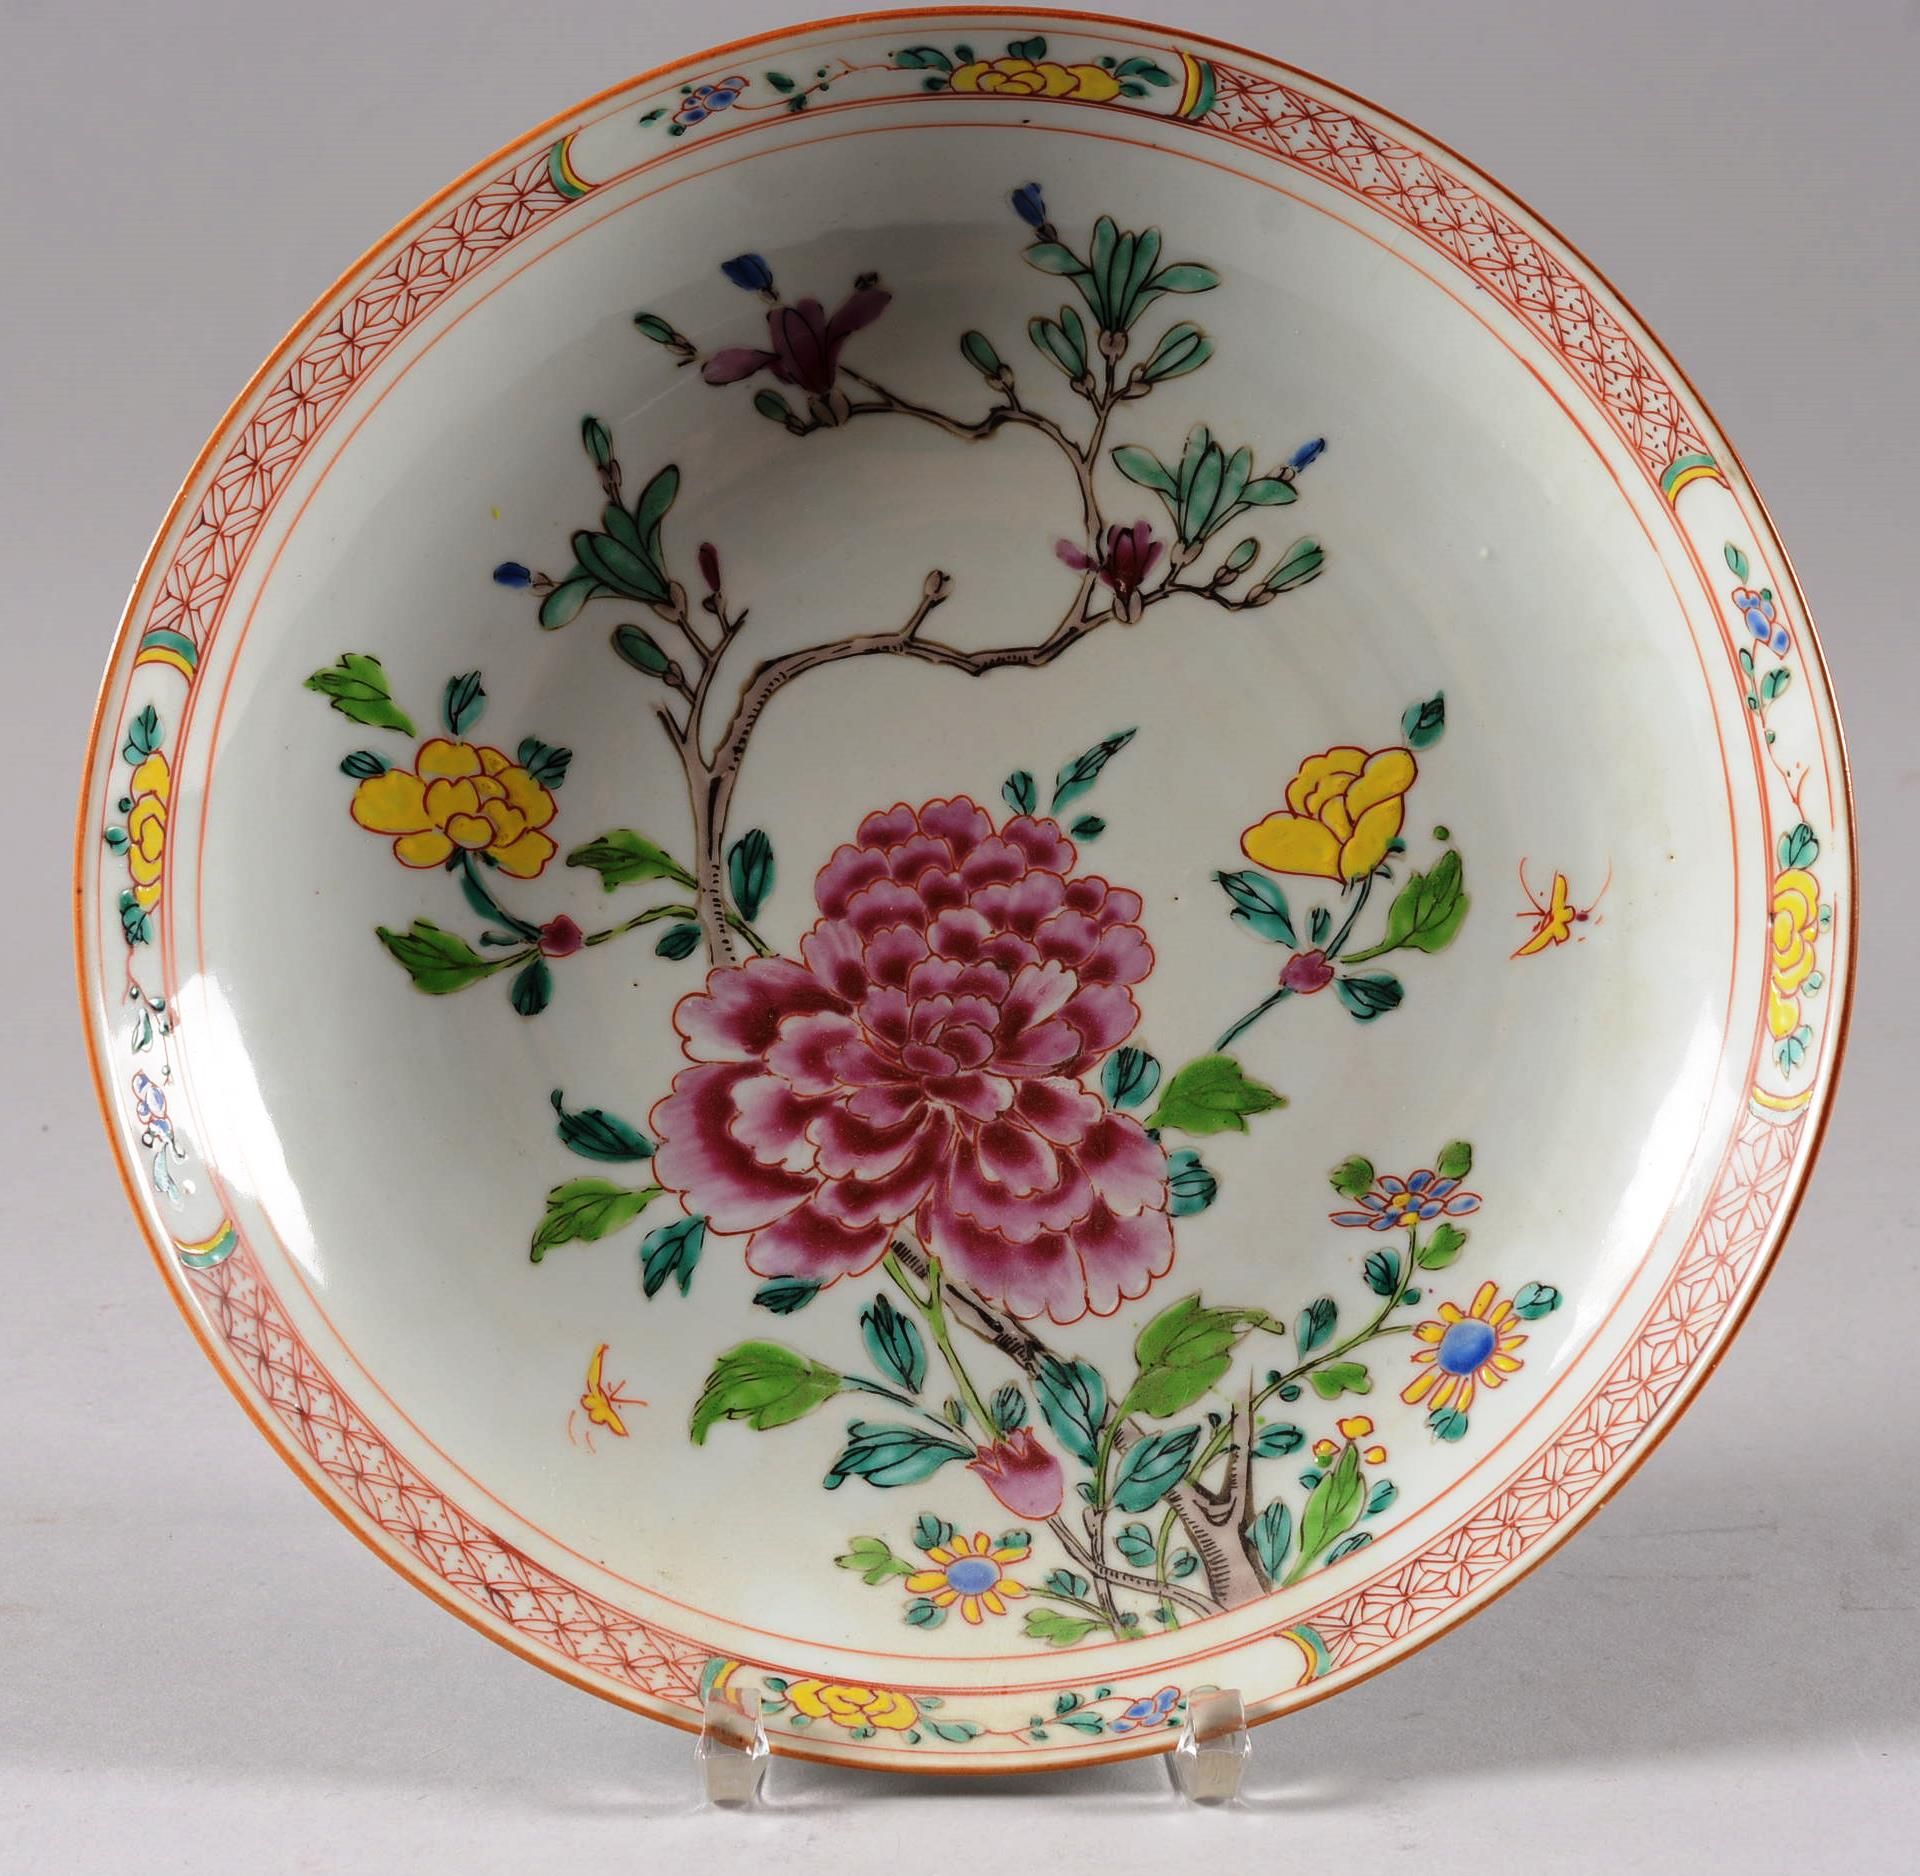 Coupe circulaire en porcelaine chinoise CINA.

Ciotola circolare in porcellana c&hellip;